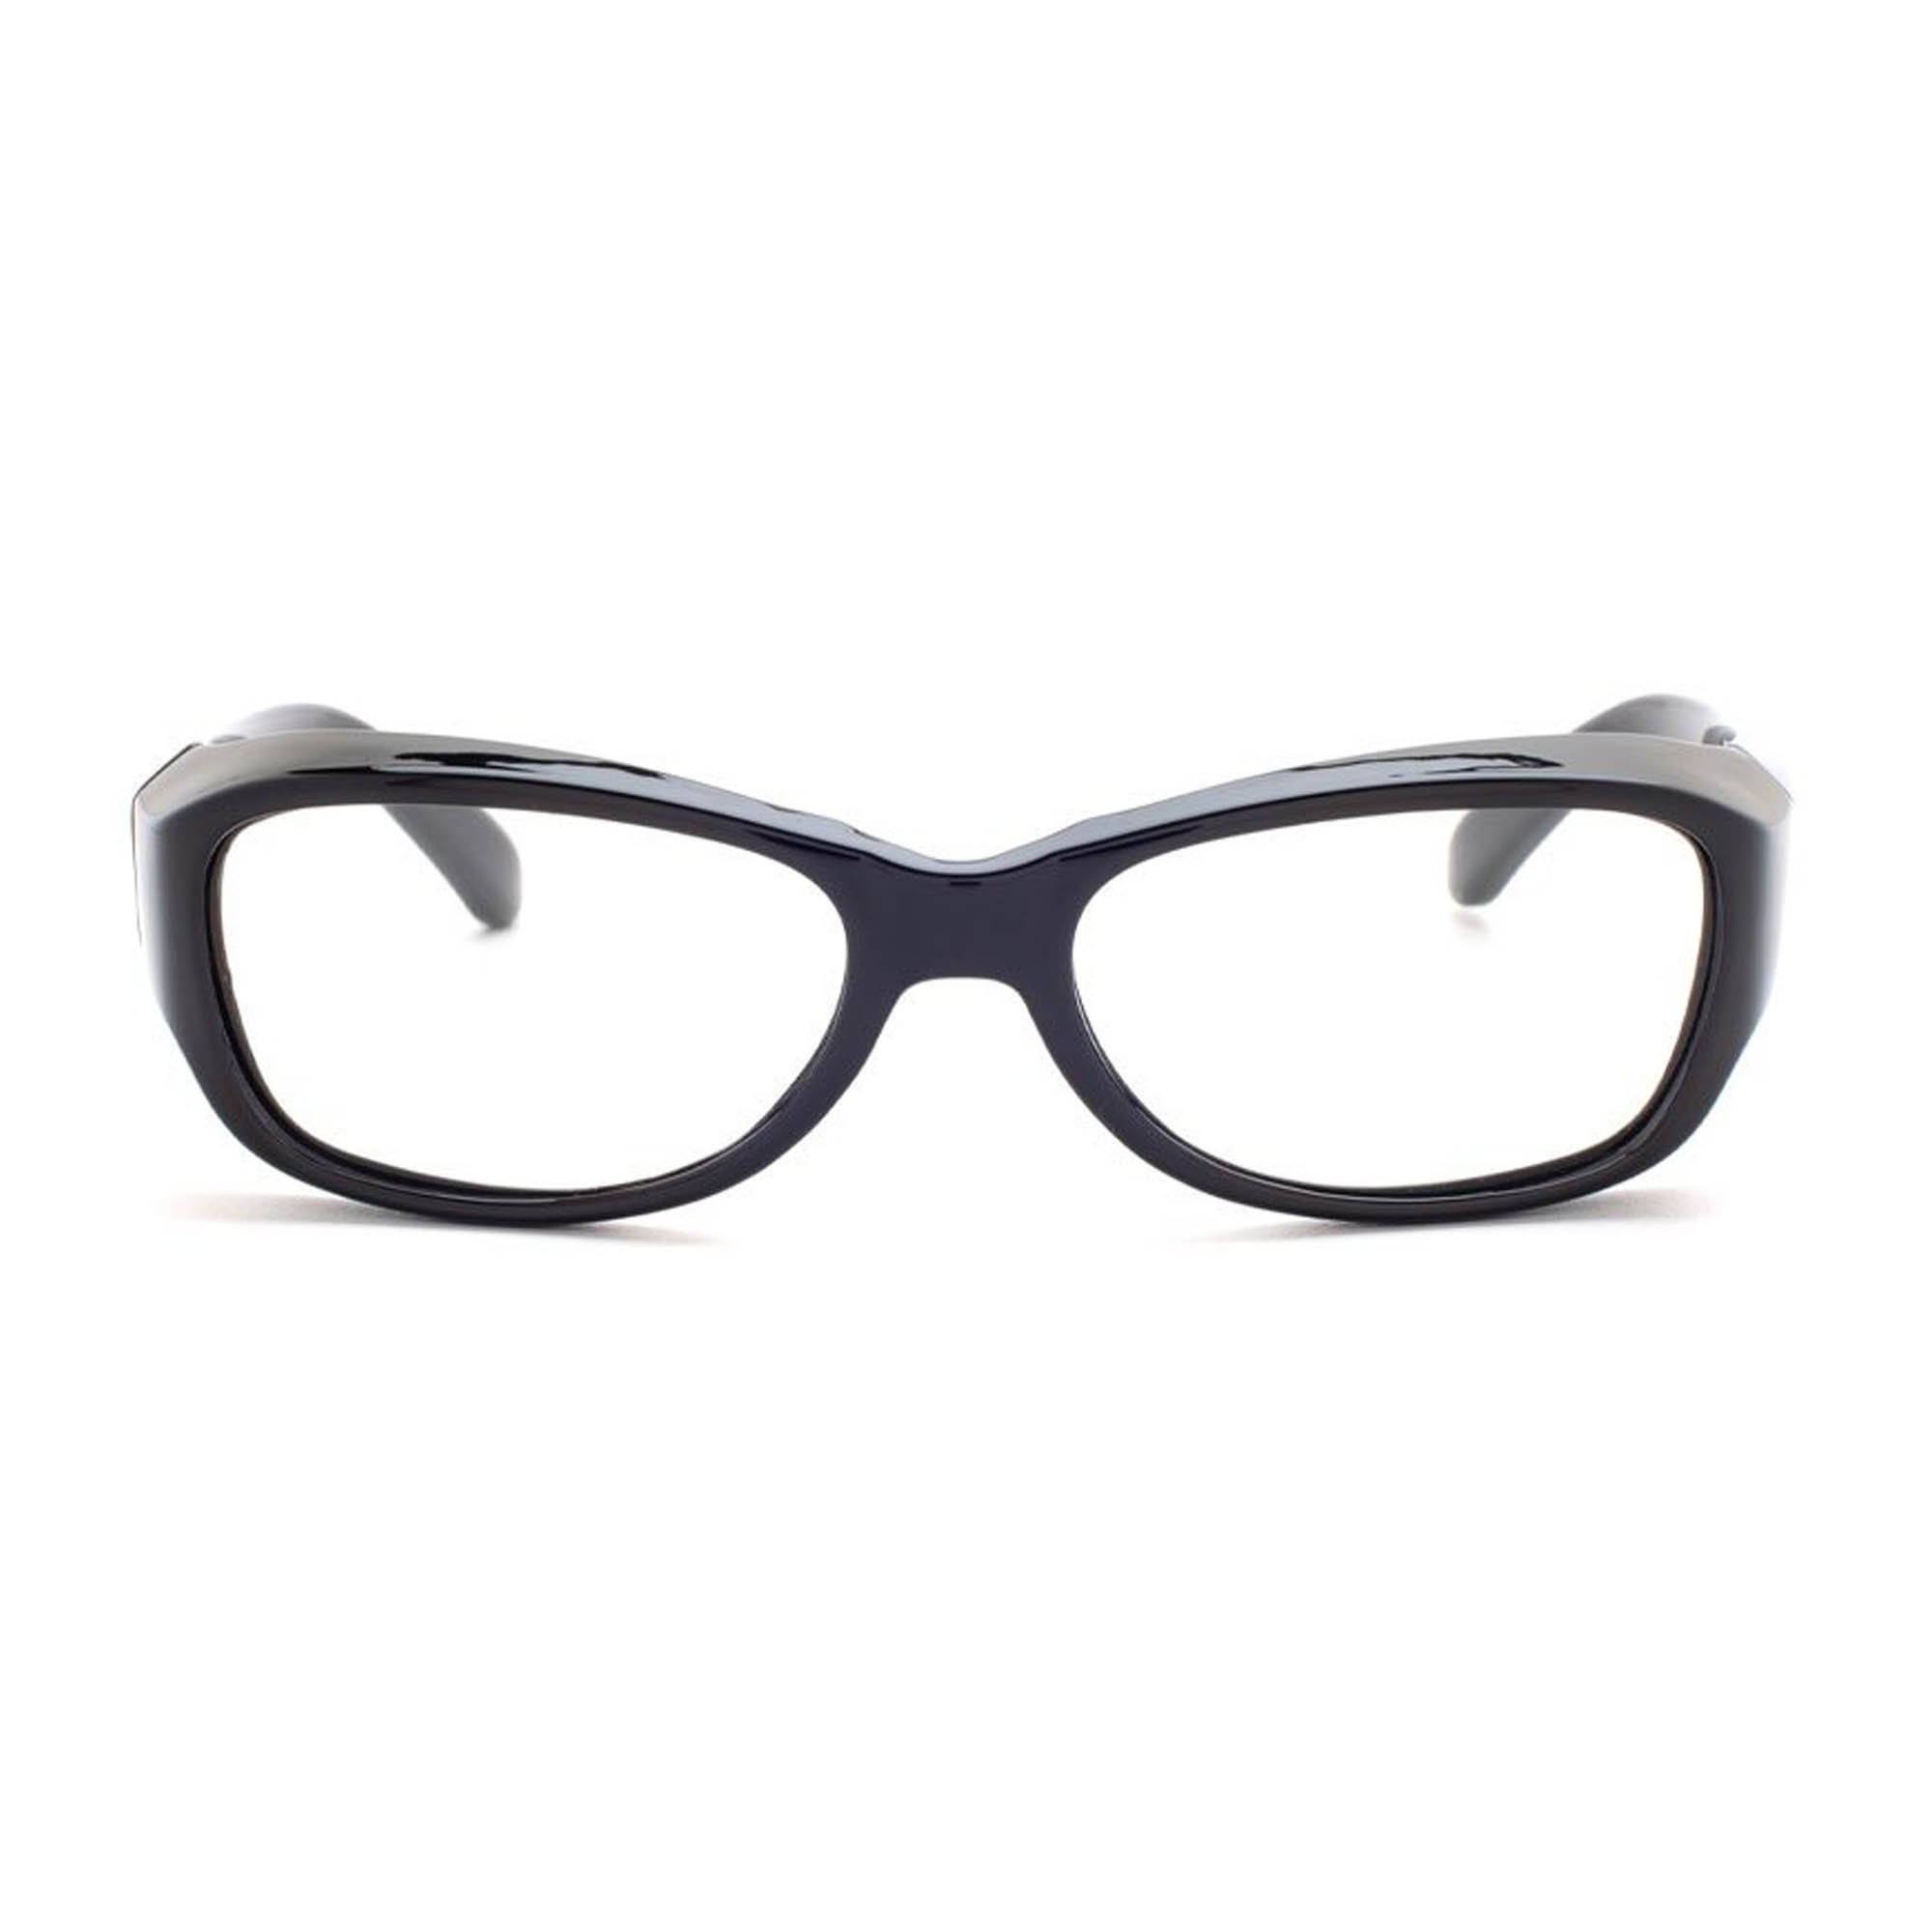 RG-375-BK Women's Plastic Frame Radiation Glasses